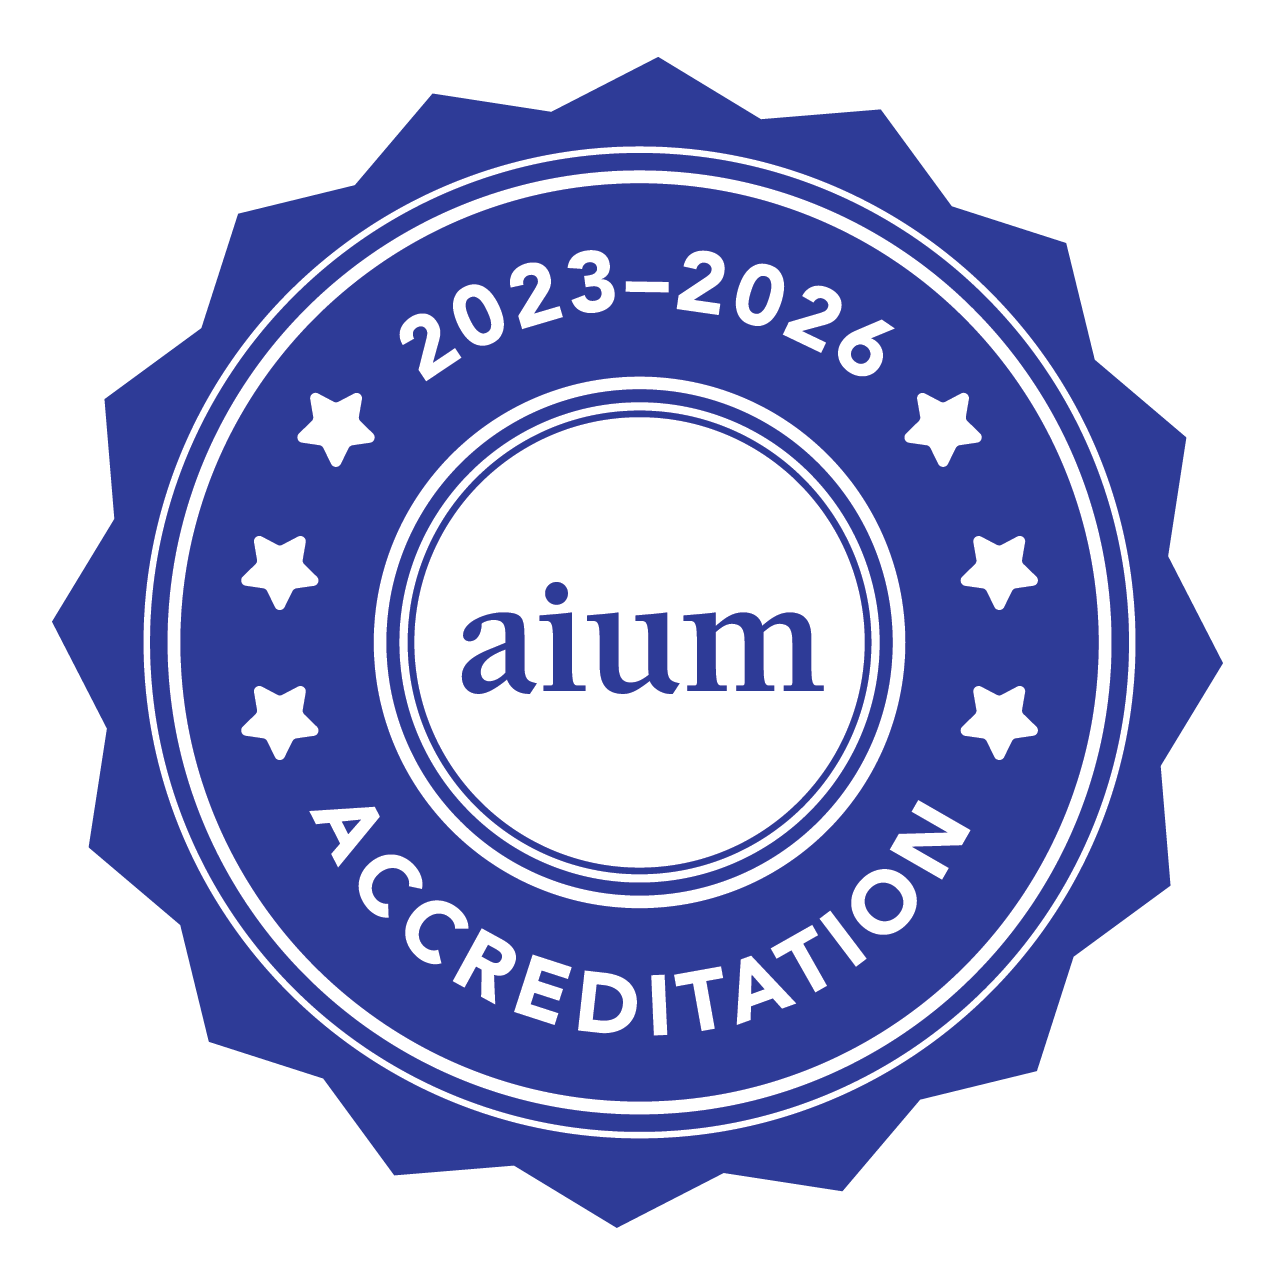 aium accreditation